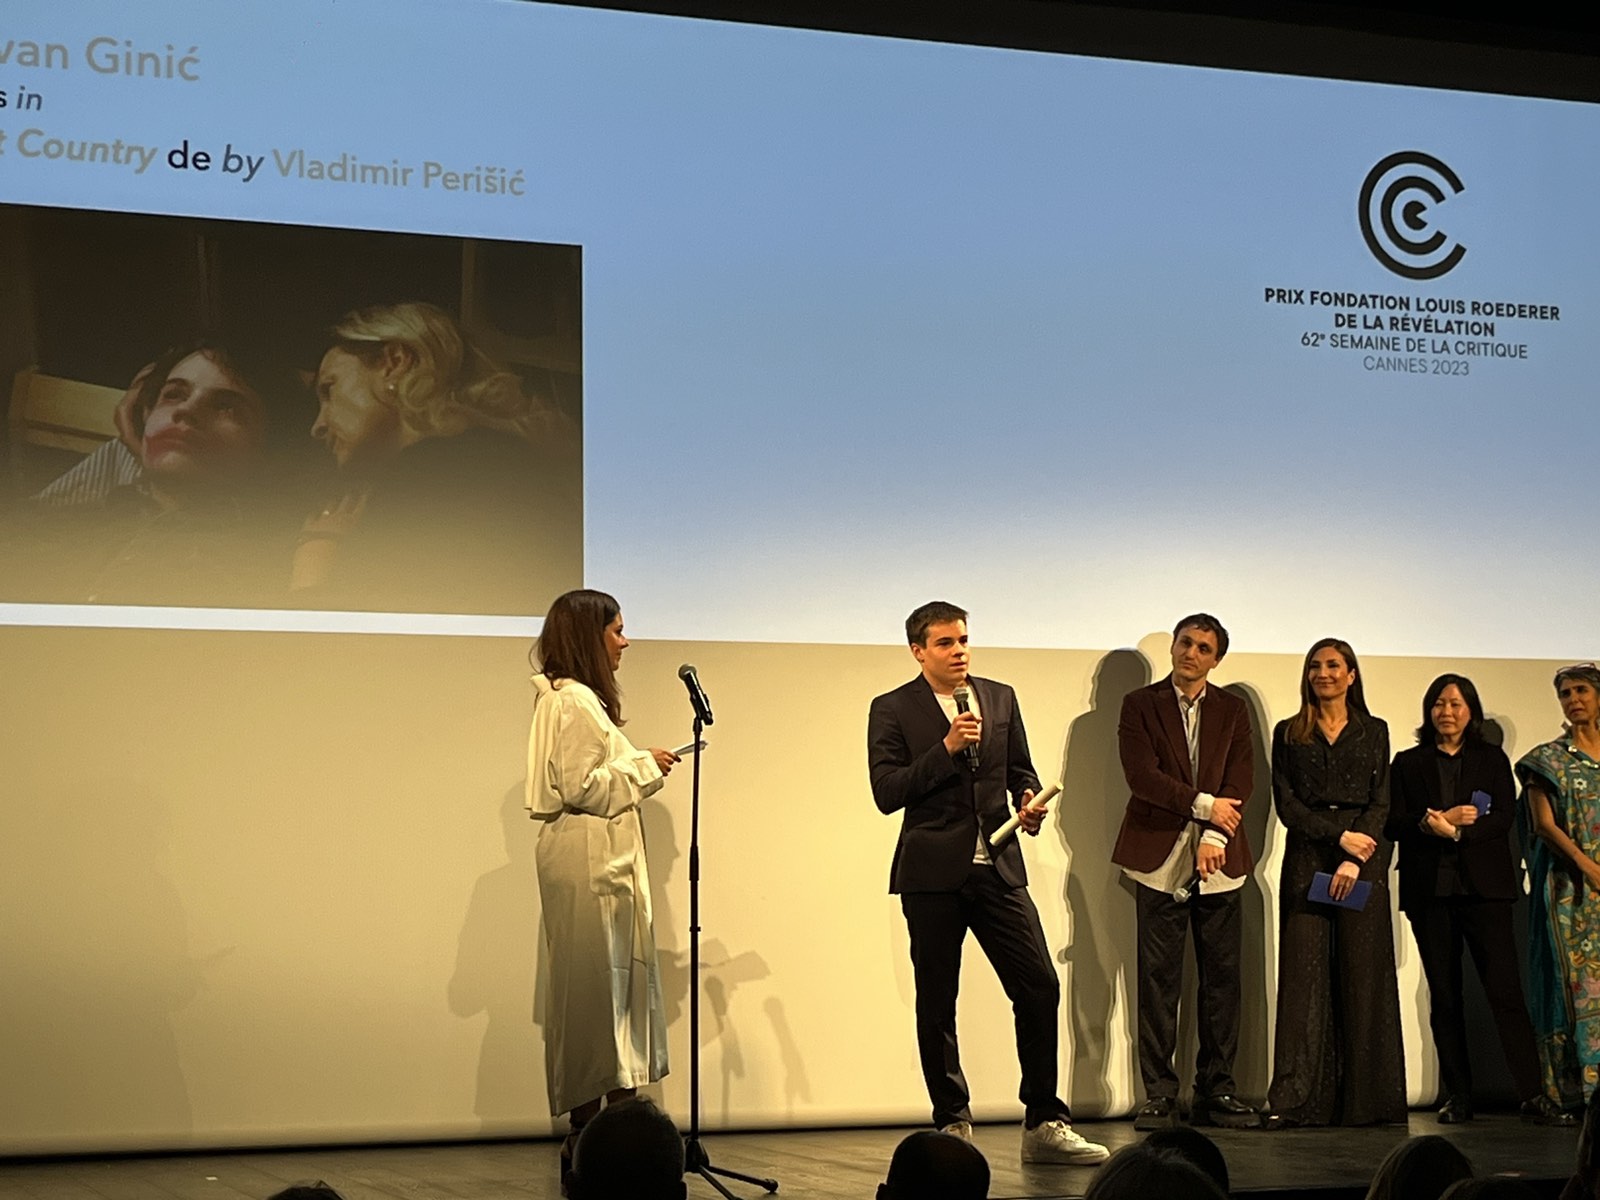 Veliki uspeh za našu kinematografiju i film "Lost Country": Jovan Ginić osvojio Nagradu "Otkrovenje" za najboljeg mladog glumca 76. Kanskog festivala 2